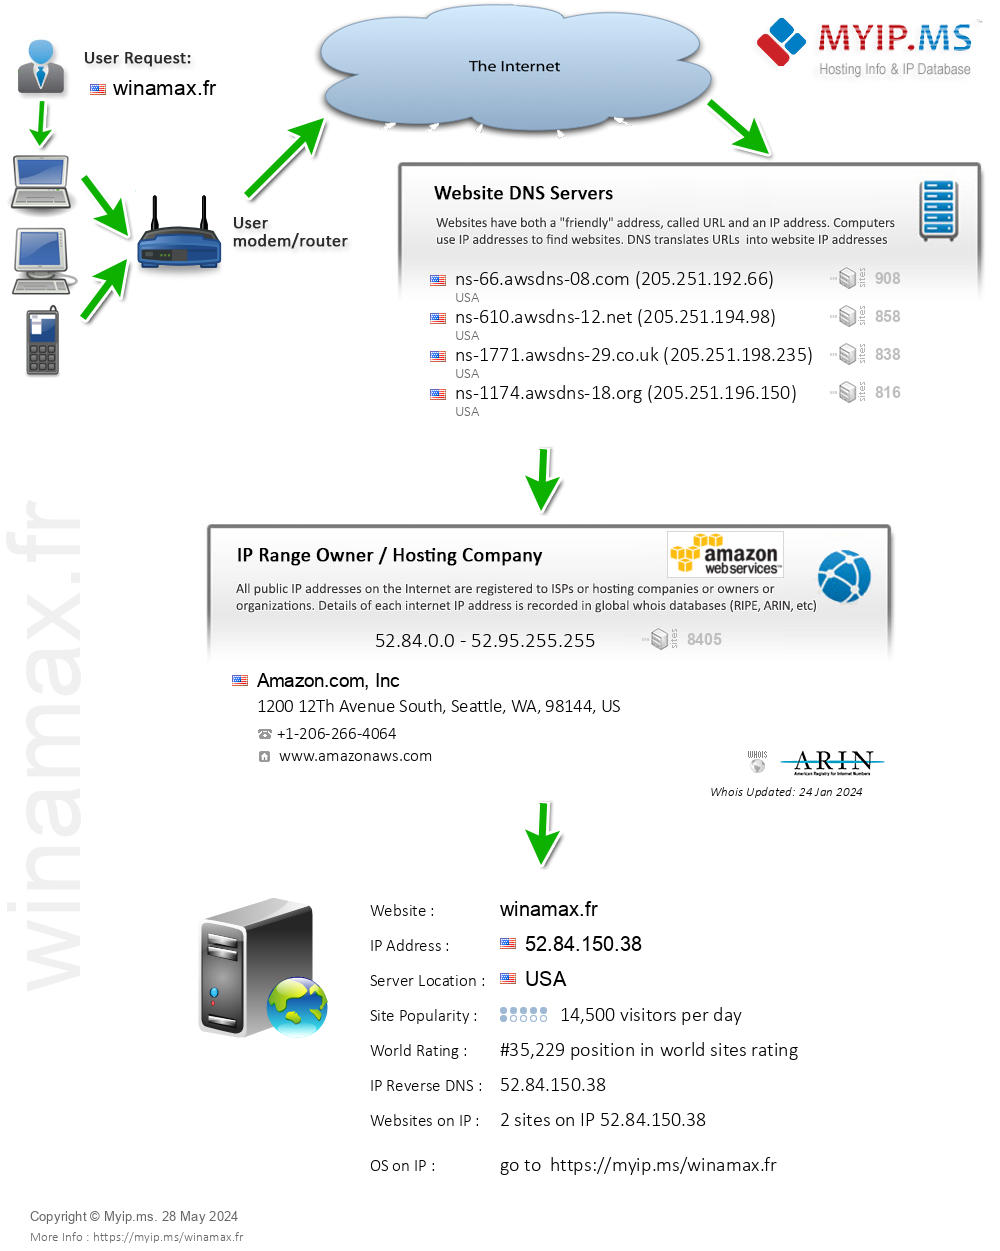 Winamax.fr - Website Hosting Visual IP Diagram